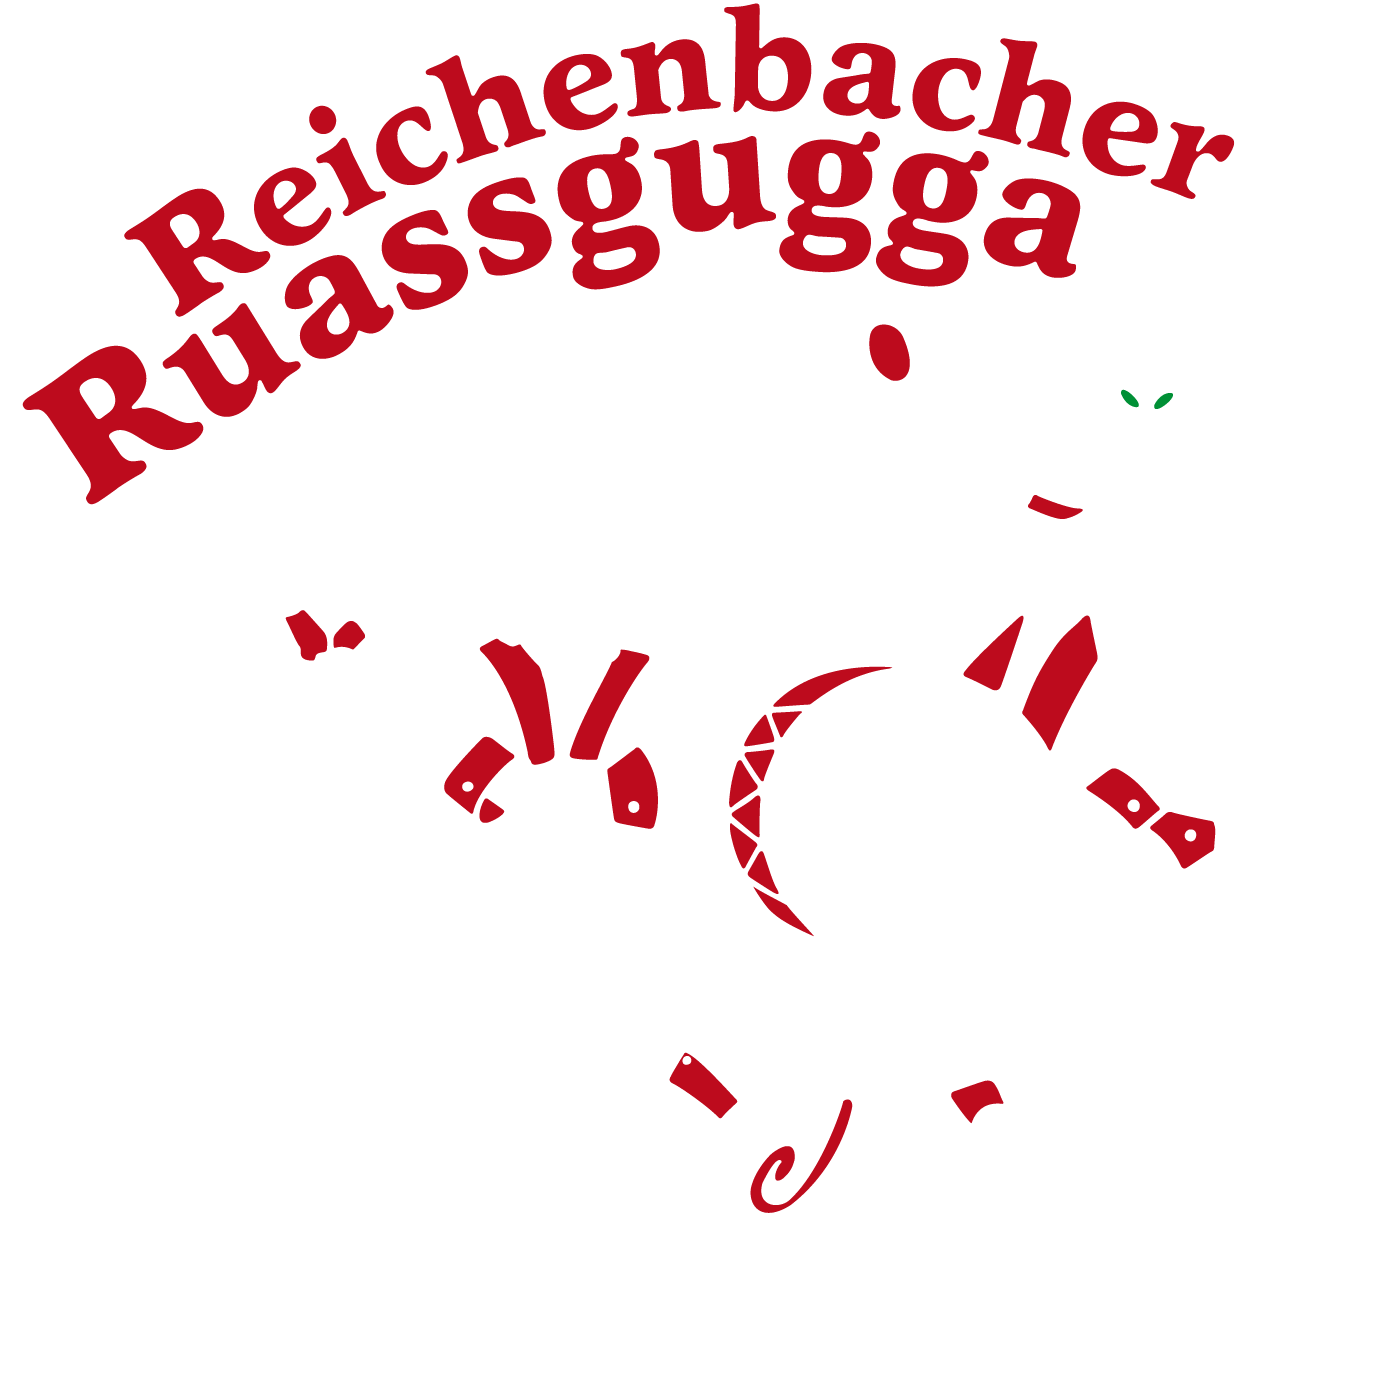 Reichenbacher Ruassgugga